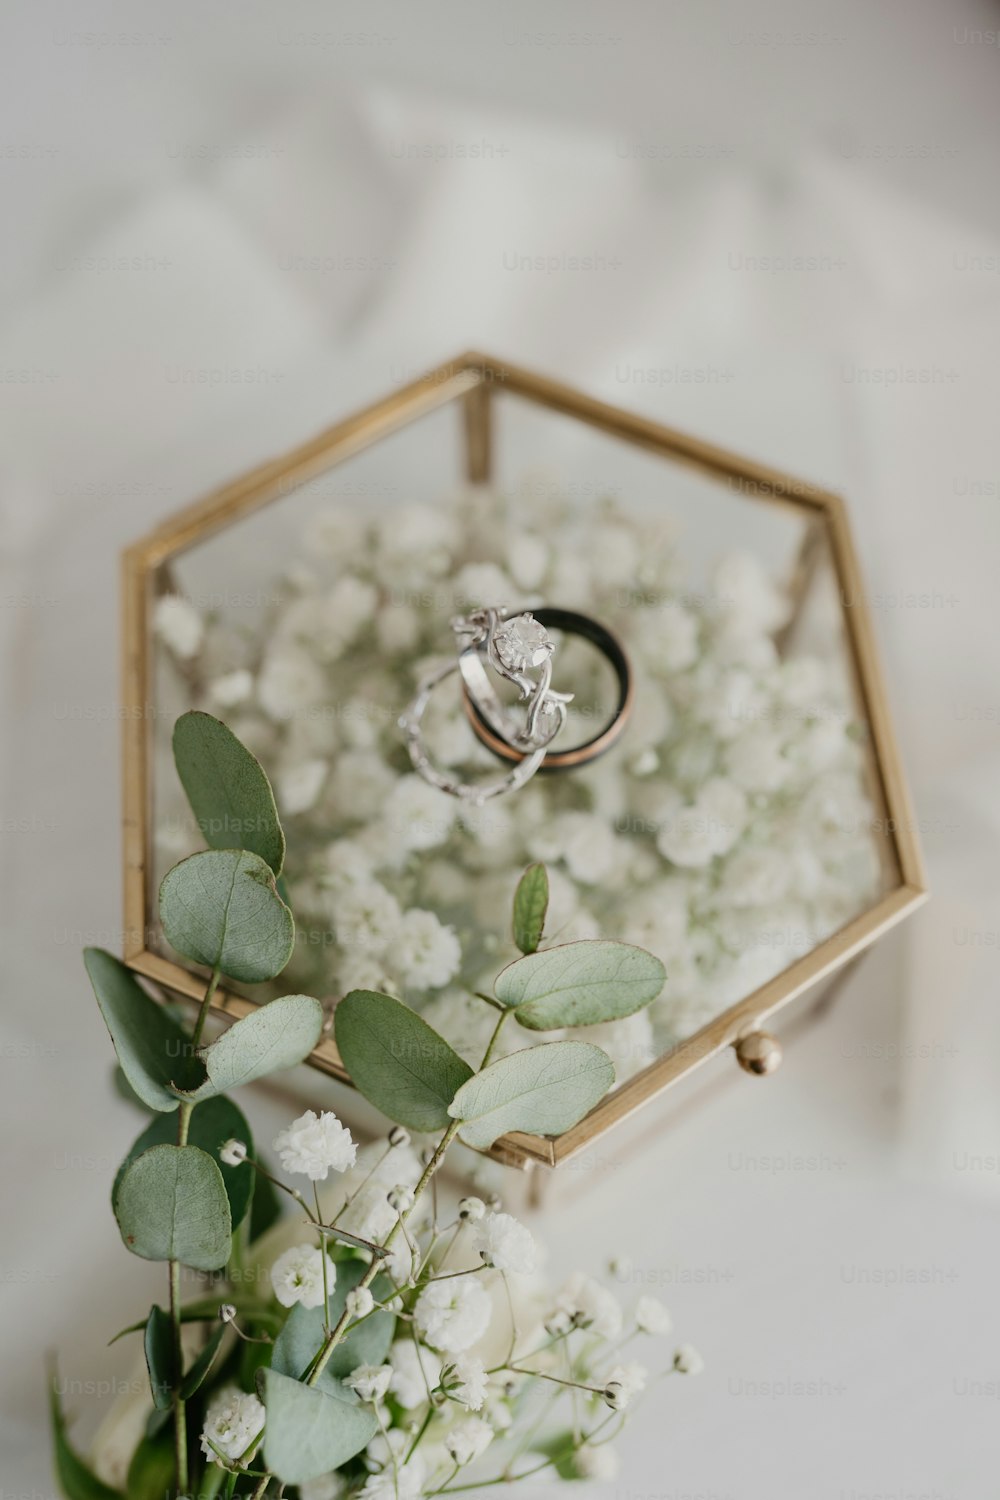 꽃다발 위에 앉아 있는 결혼 반지 두 개